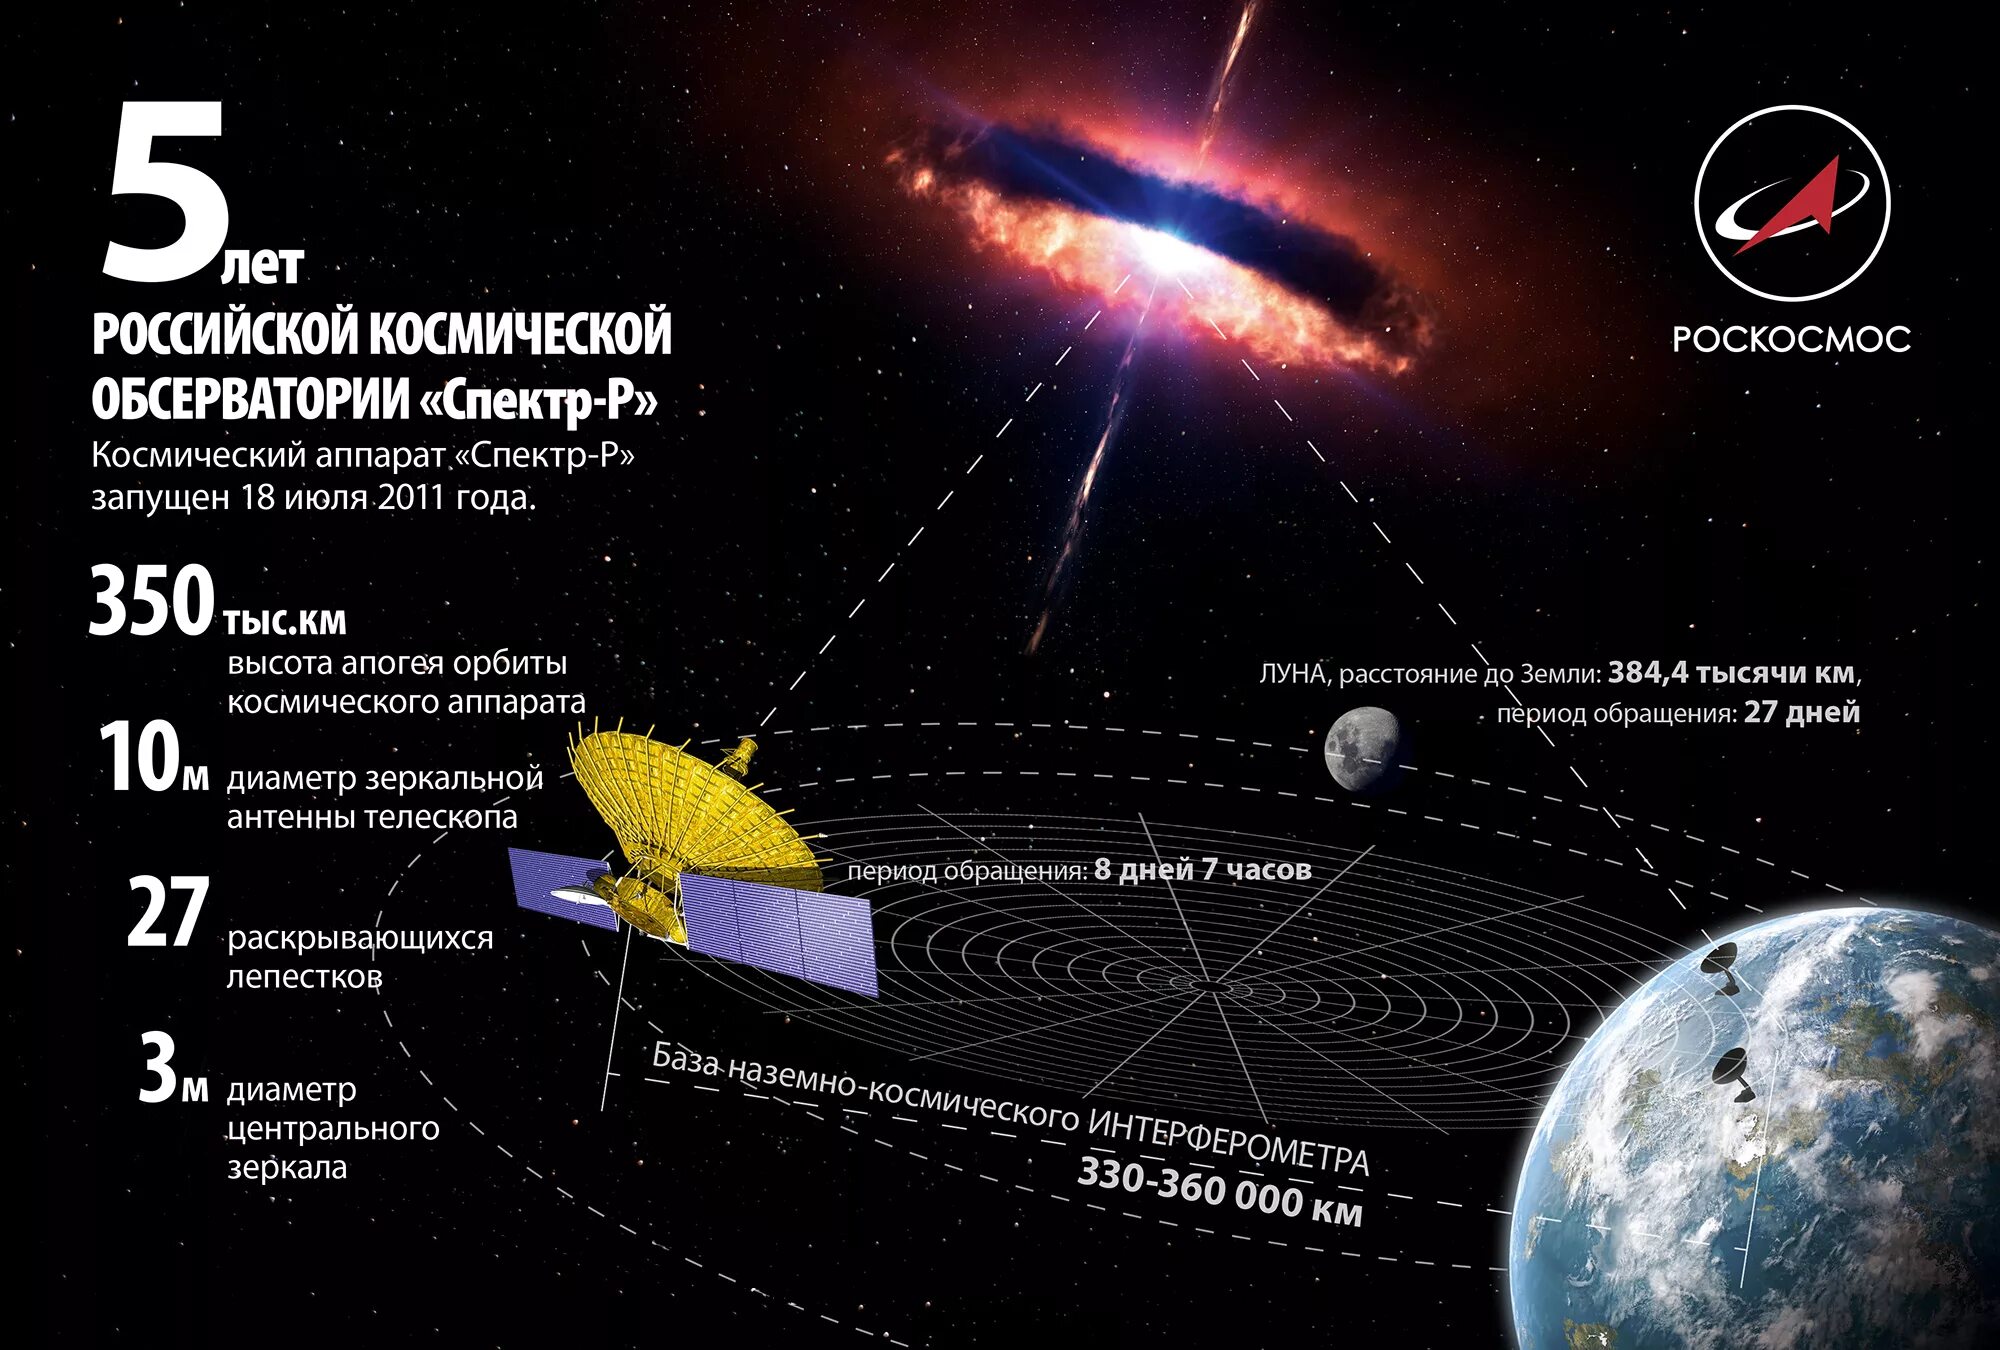 Космический телескоп Радиоастрон. Космический аппарат спектр-р. Российская Космическая обсерватория Радиоастрон. Спектр-р телескоп. Крупнейший телескоп на орбите